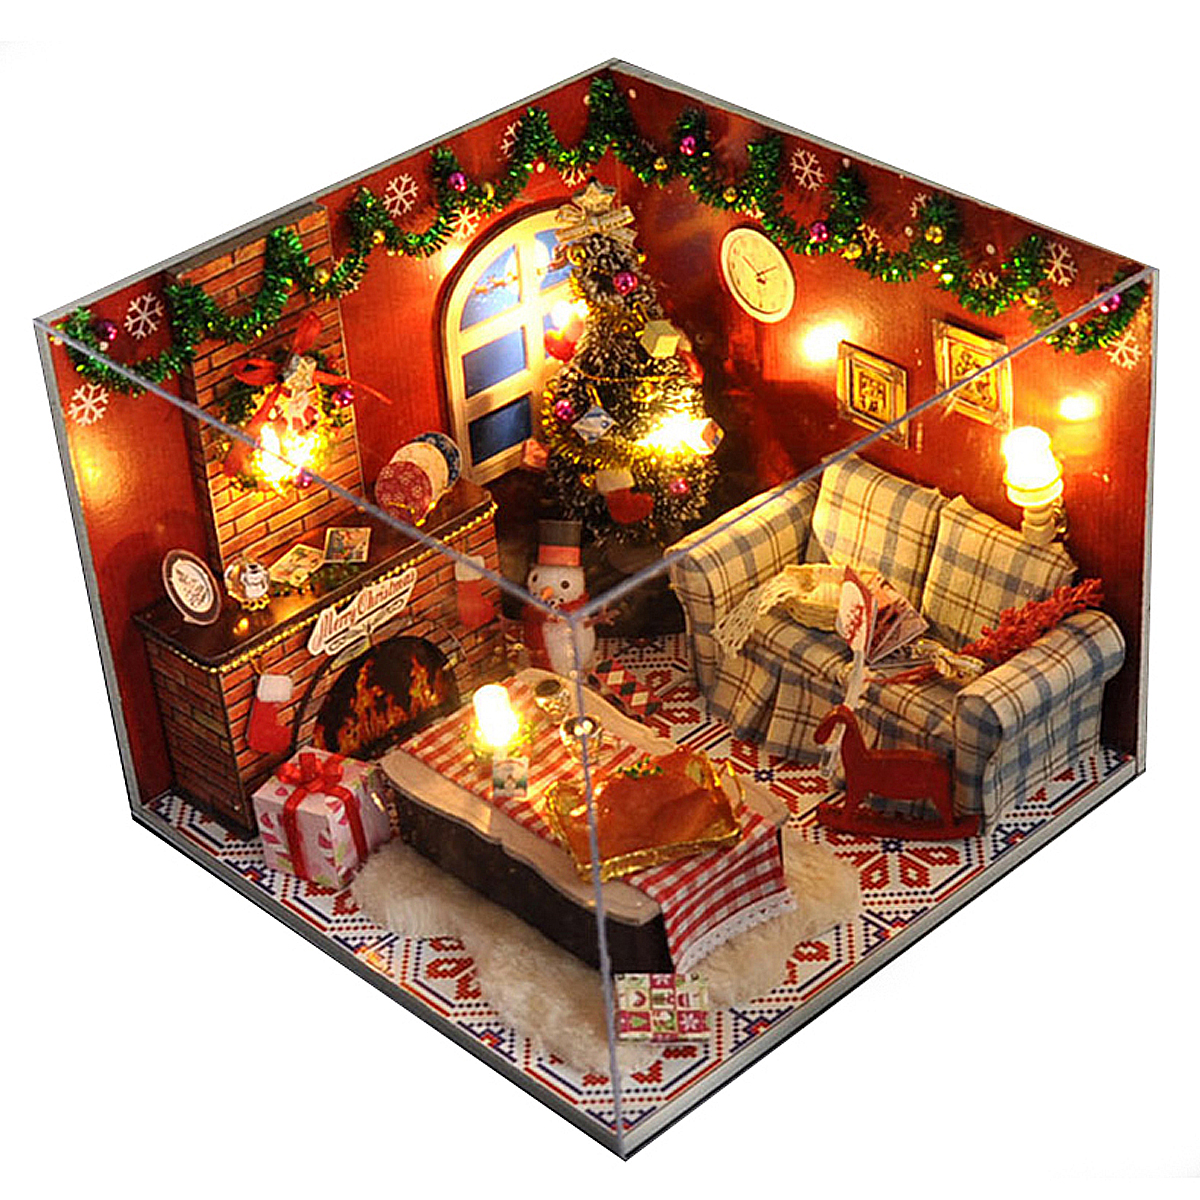 Kits de meubles de maison de poupee en bois LED Lumiere Miniature Chambre de Noel DIY Dolls House